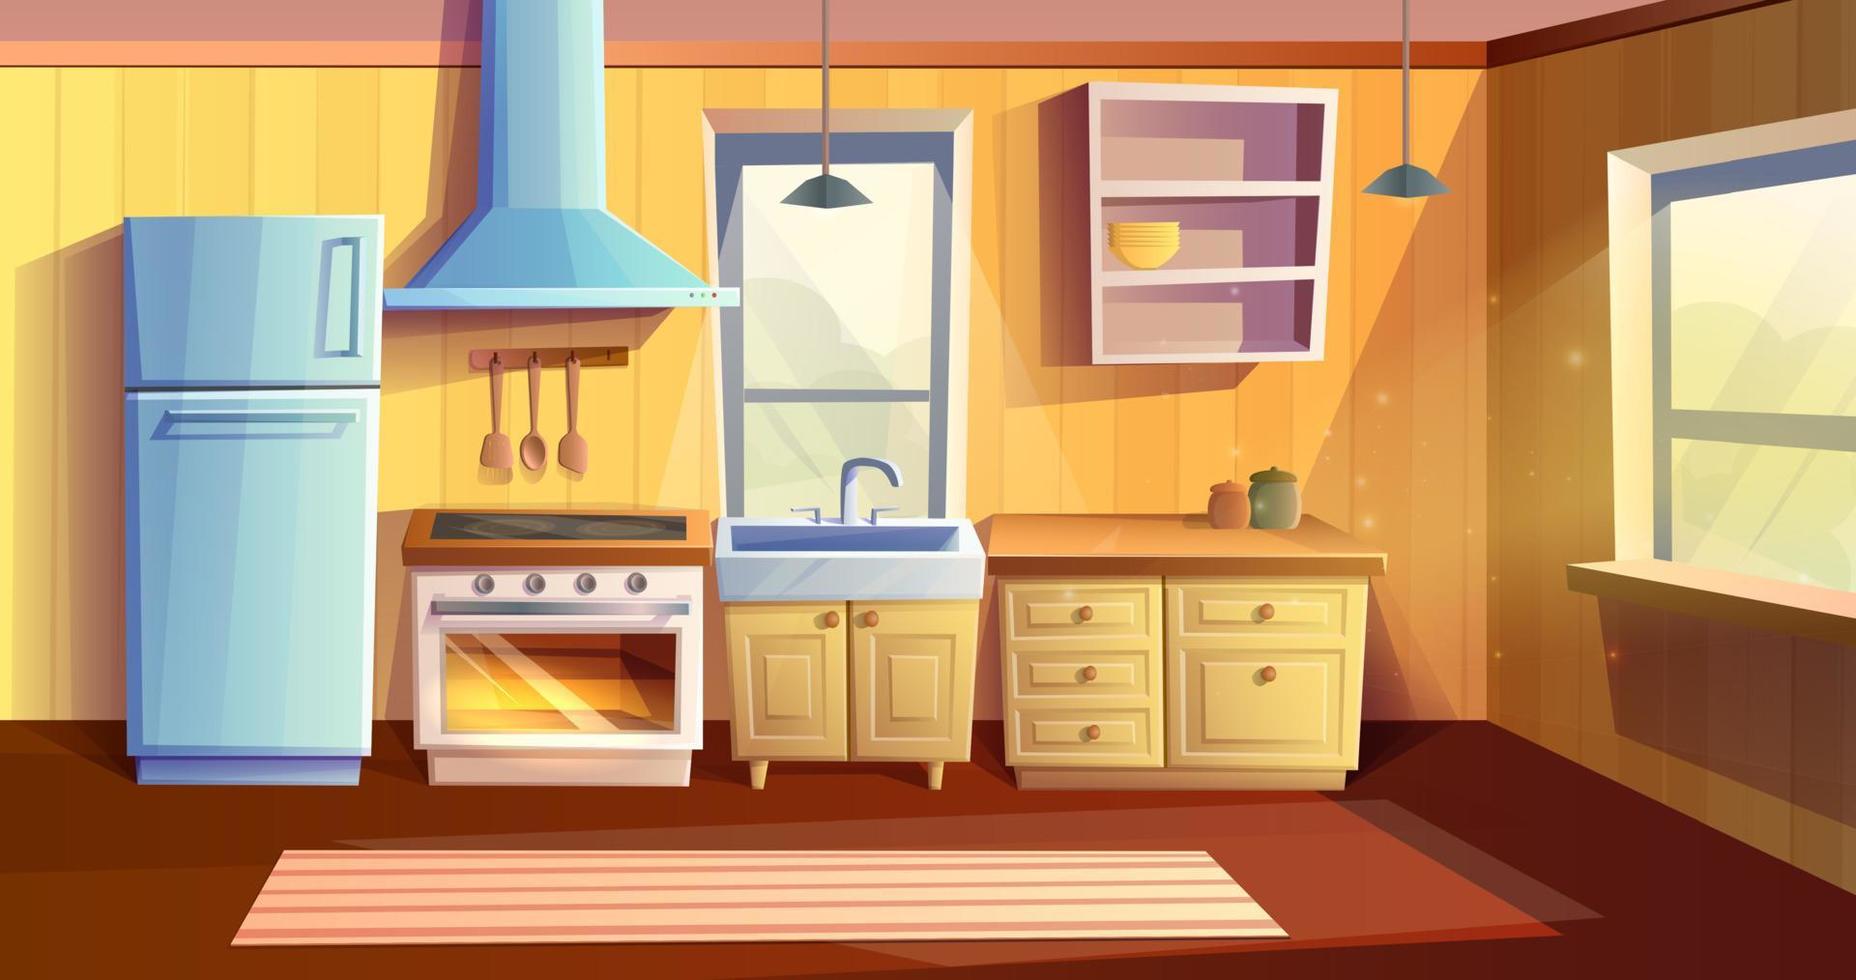 vector dibujos animados estilo ilustración de cocina habitación. refrigerador, horno con un estufa y quemador, hundir, armarios y extractor capucha.